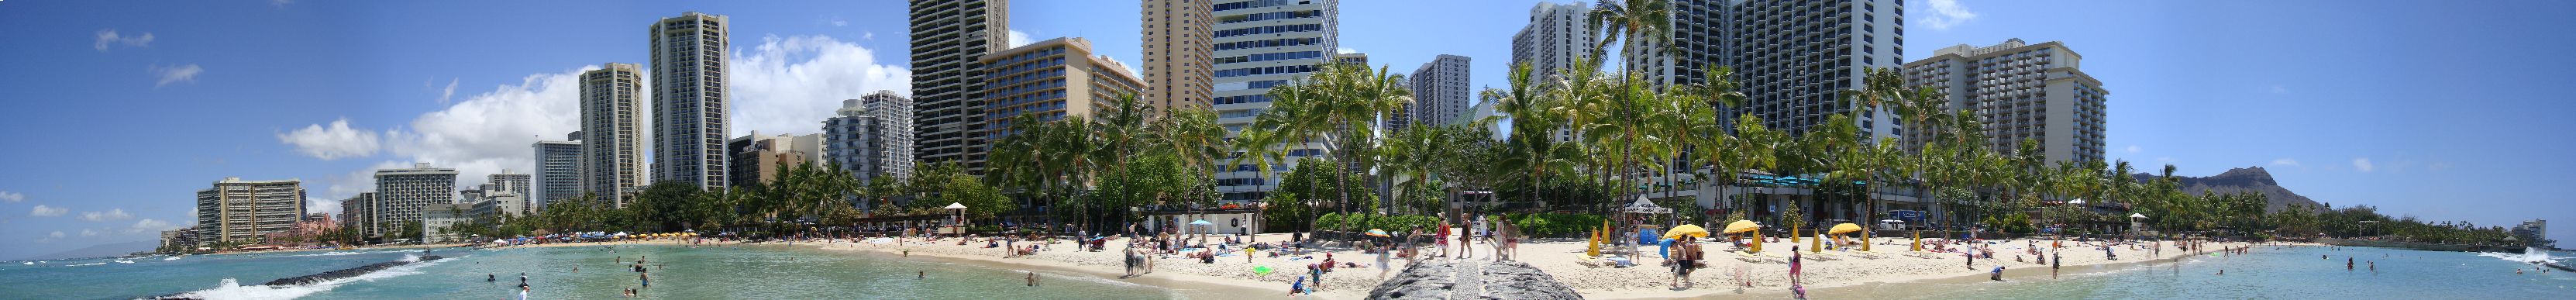 Waikiki Beach 